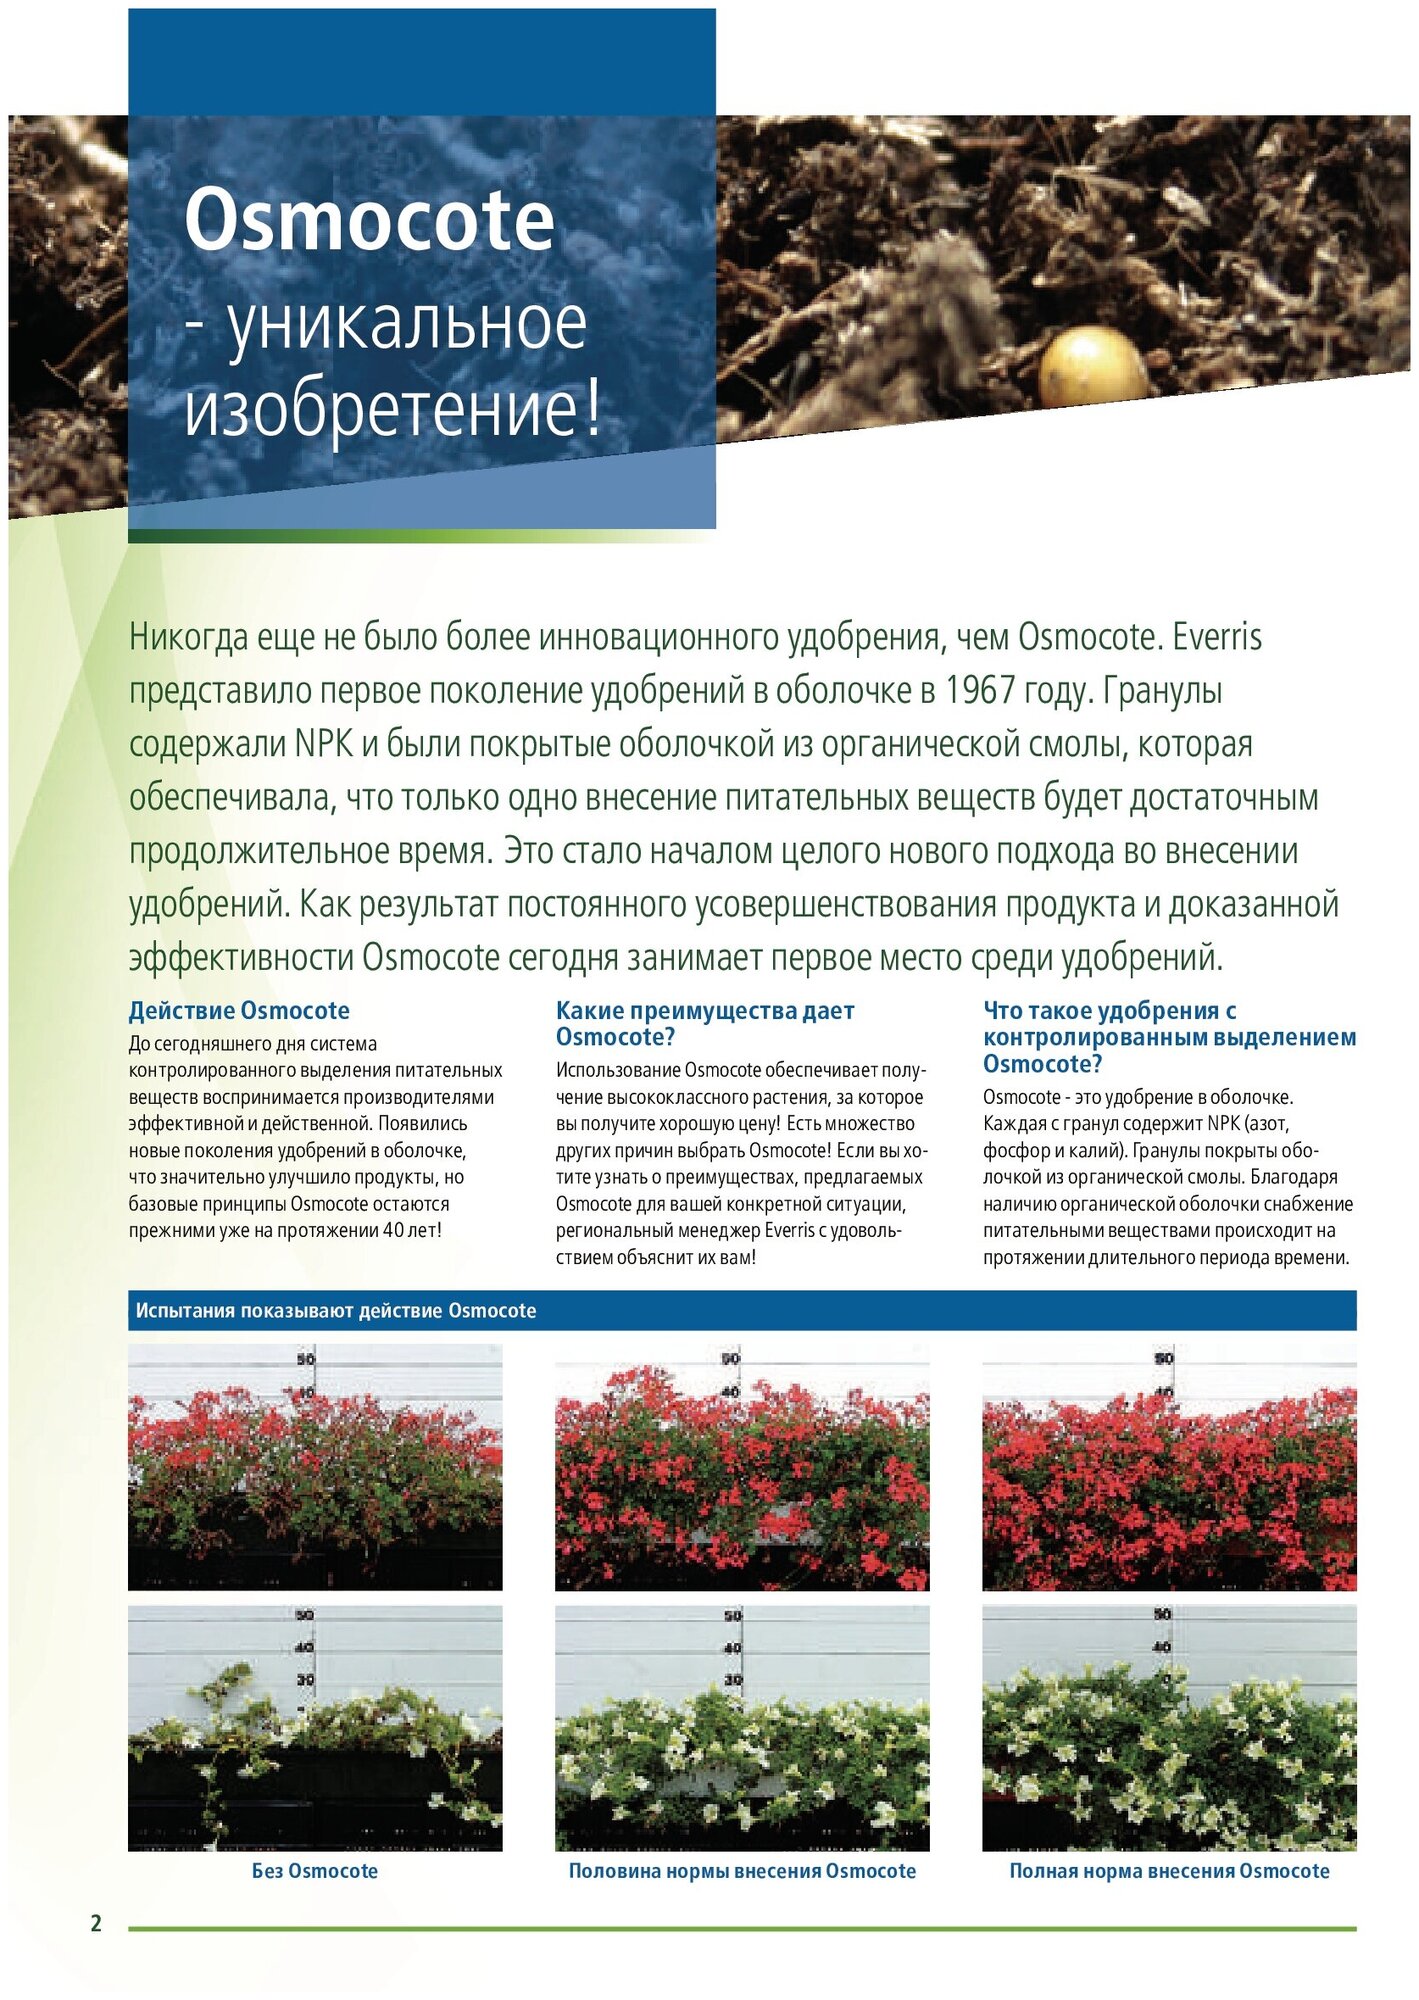 Удобрение "Osmocote Exact" Standart для всех видов растений 5-6 М 500г